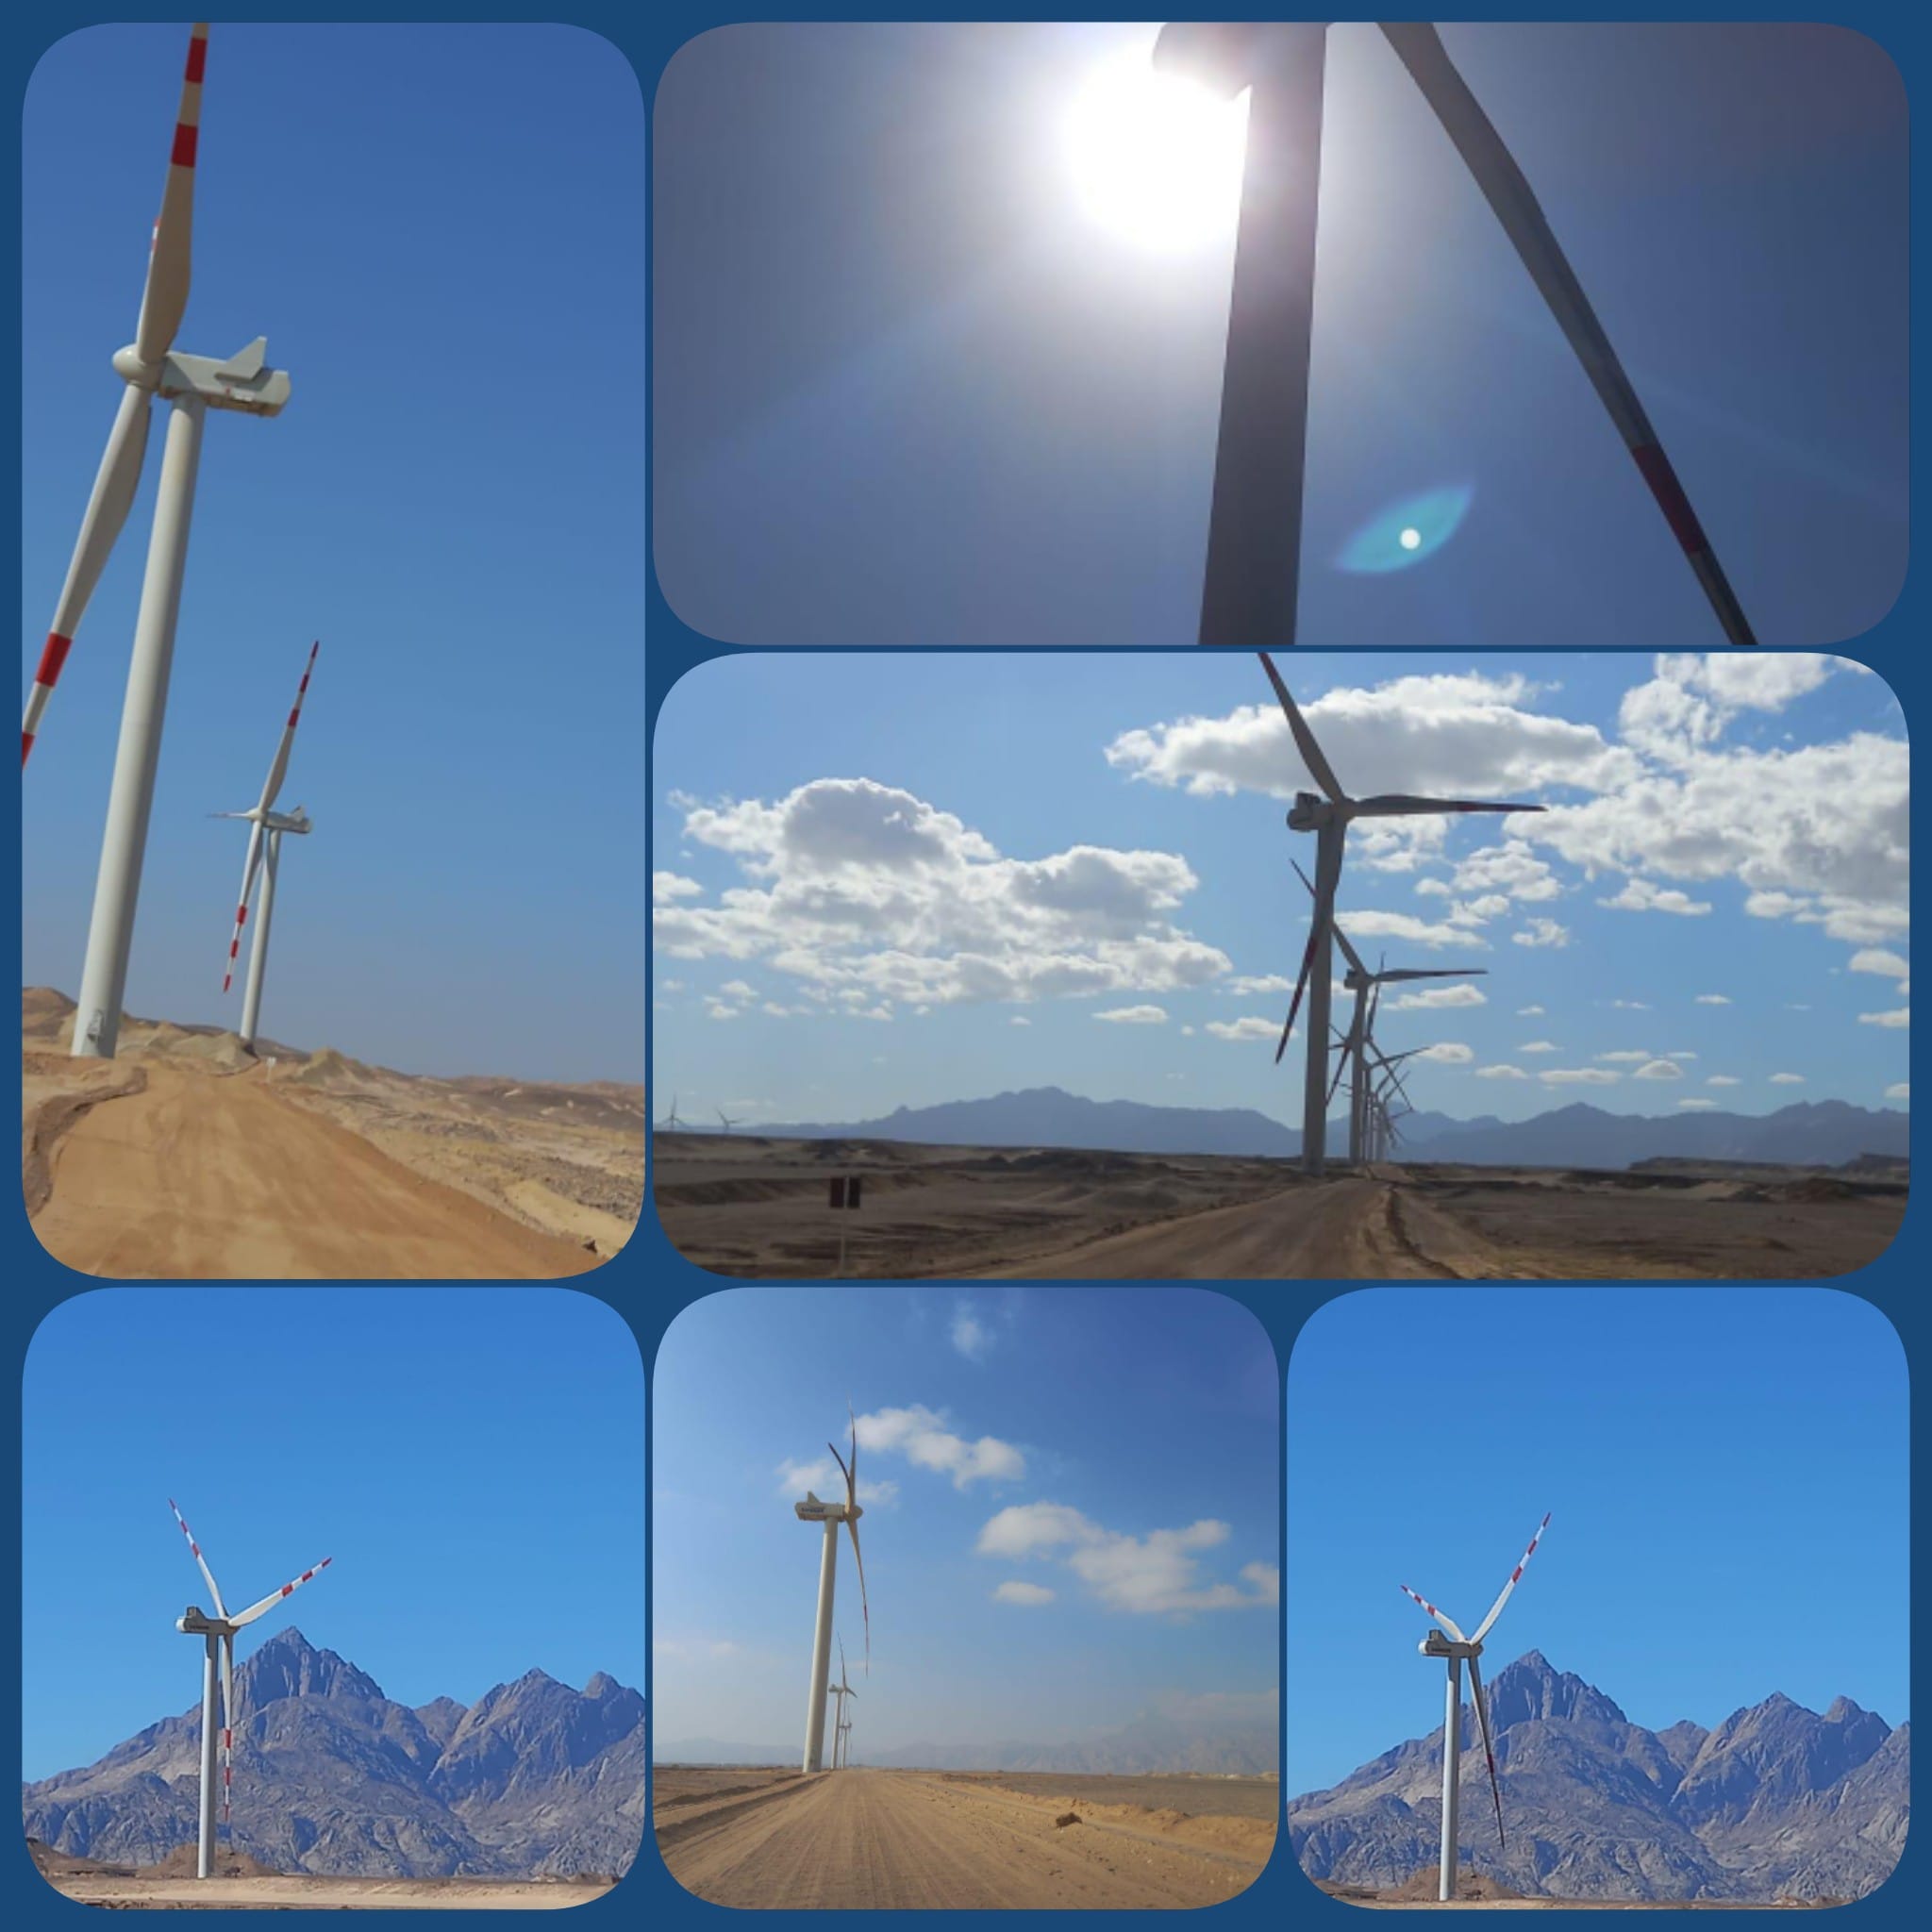 وزير الكهرباء والطاقه المتجدده يفتتح اليوم مشروع محطة طاقة الرياح بخليج السويس قدرة 252 ميجاوات